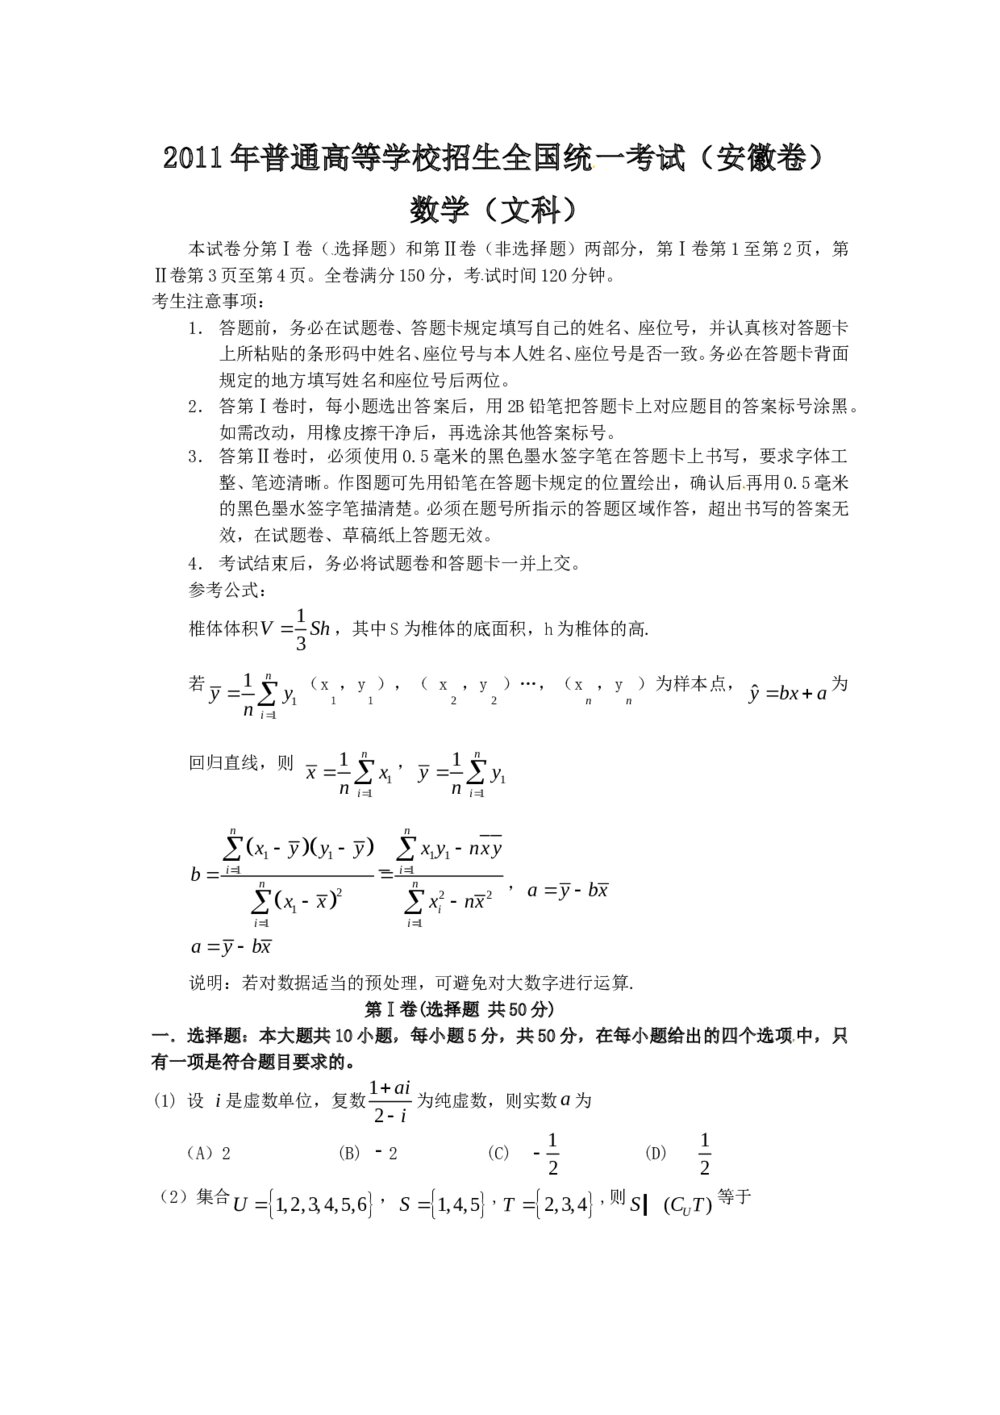 全国高考2011安徽省高考(文科)数学试卷